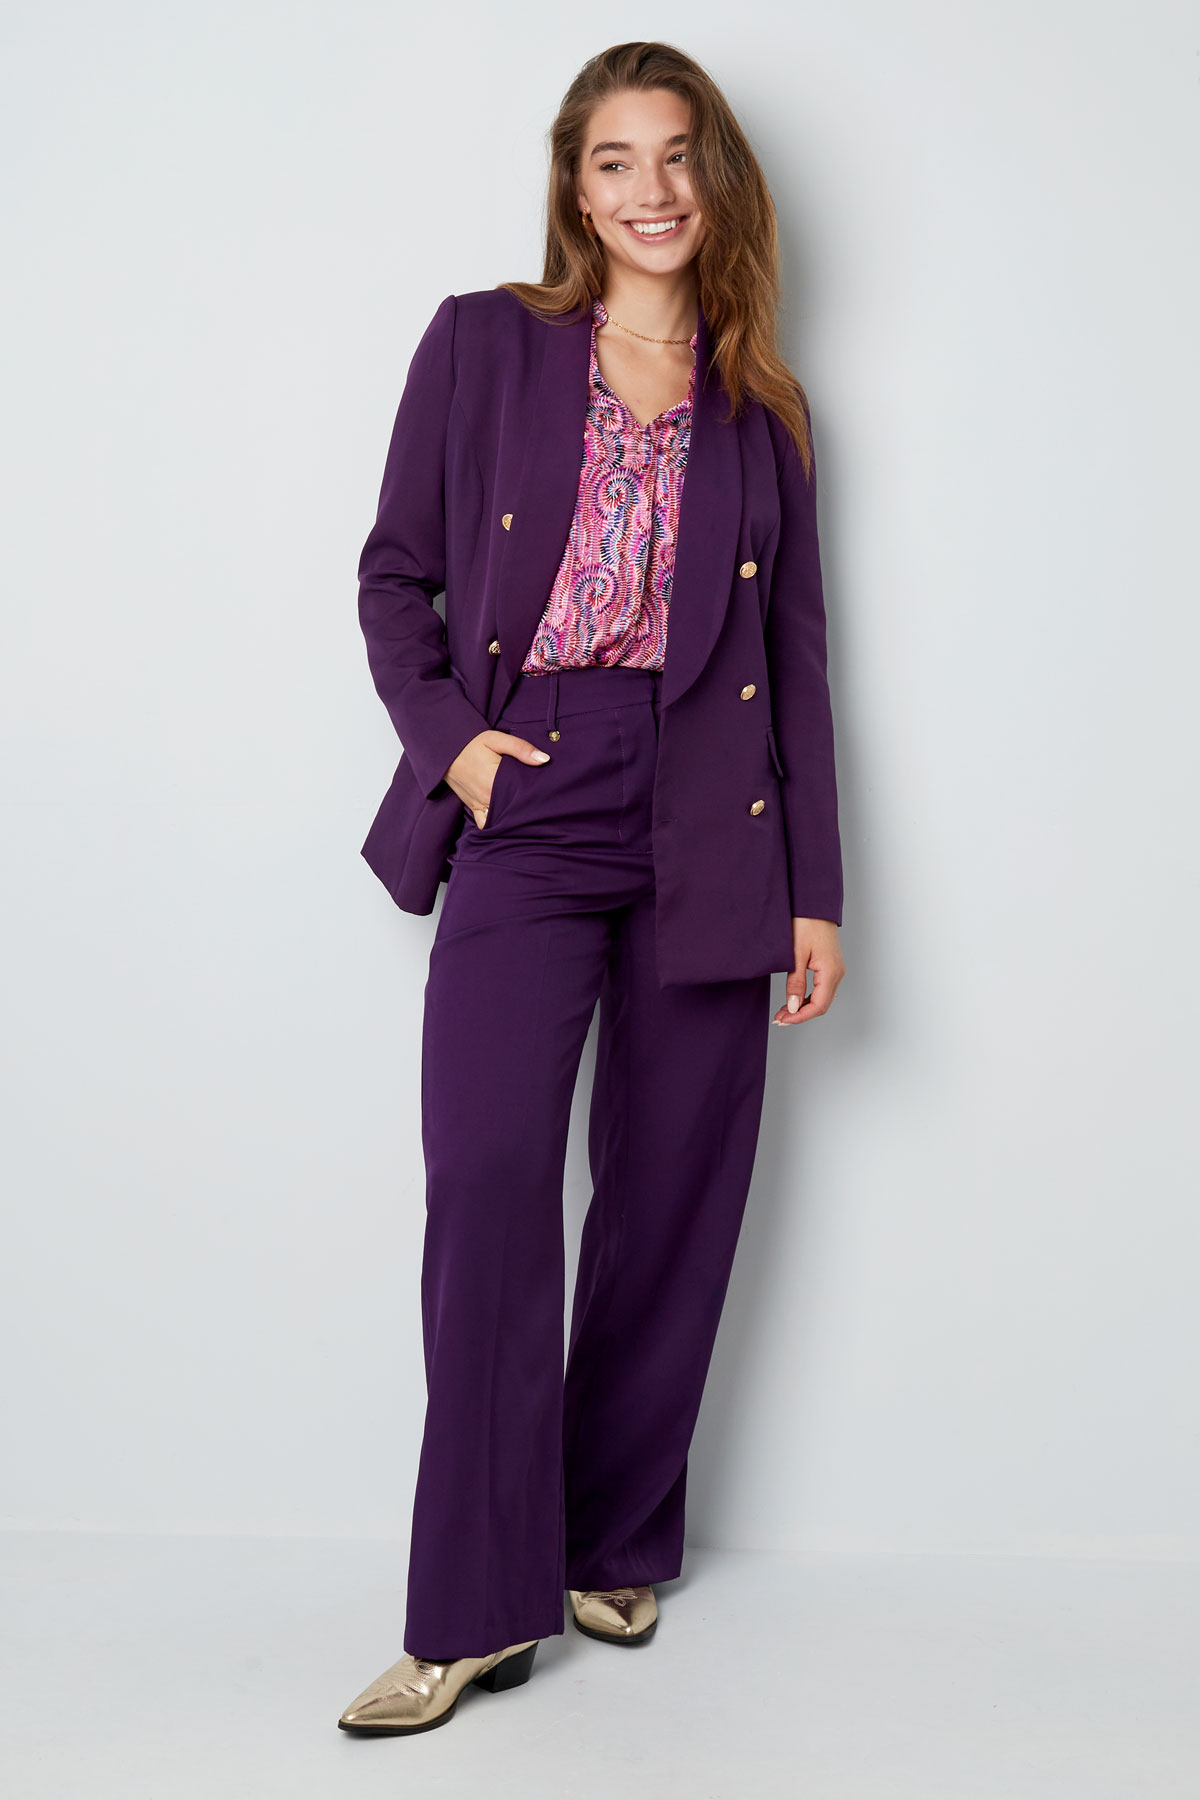 Pantalón plisado - violeta Imagen6